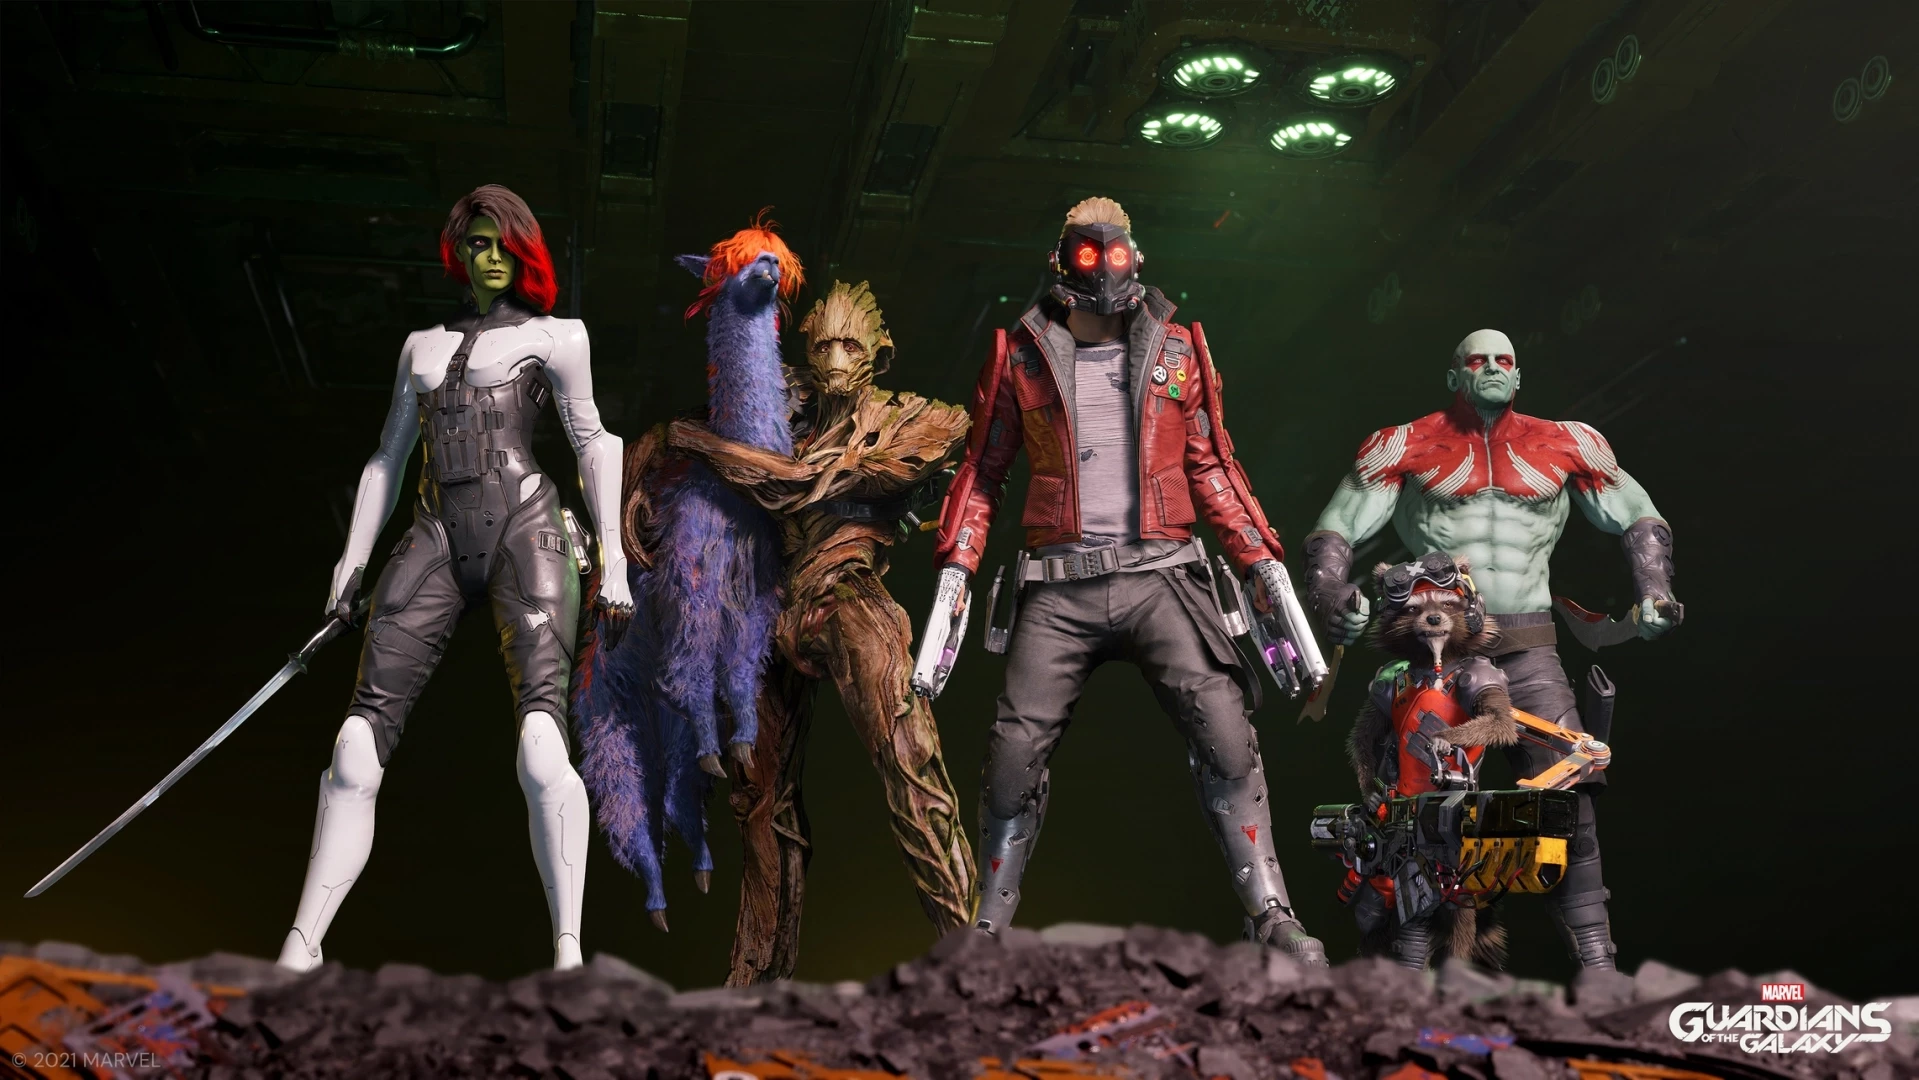 Marvel's Guardians of the Galaxy voor de PlayStation 5 kopen op nedgame.nl